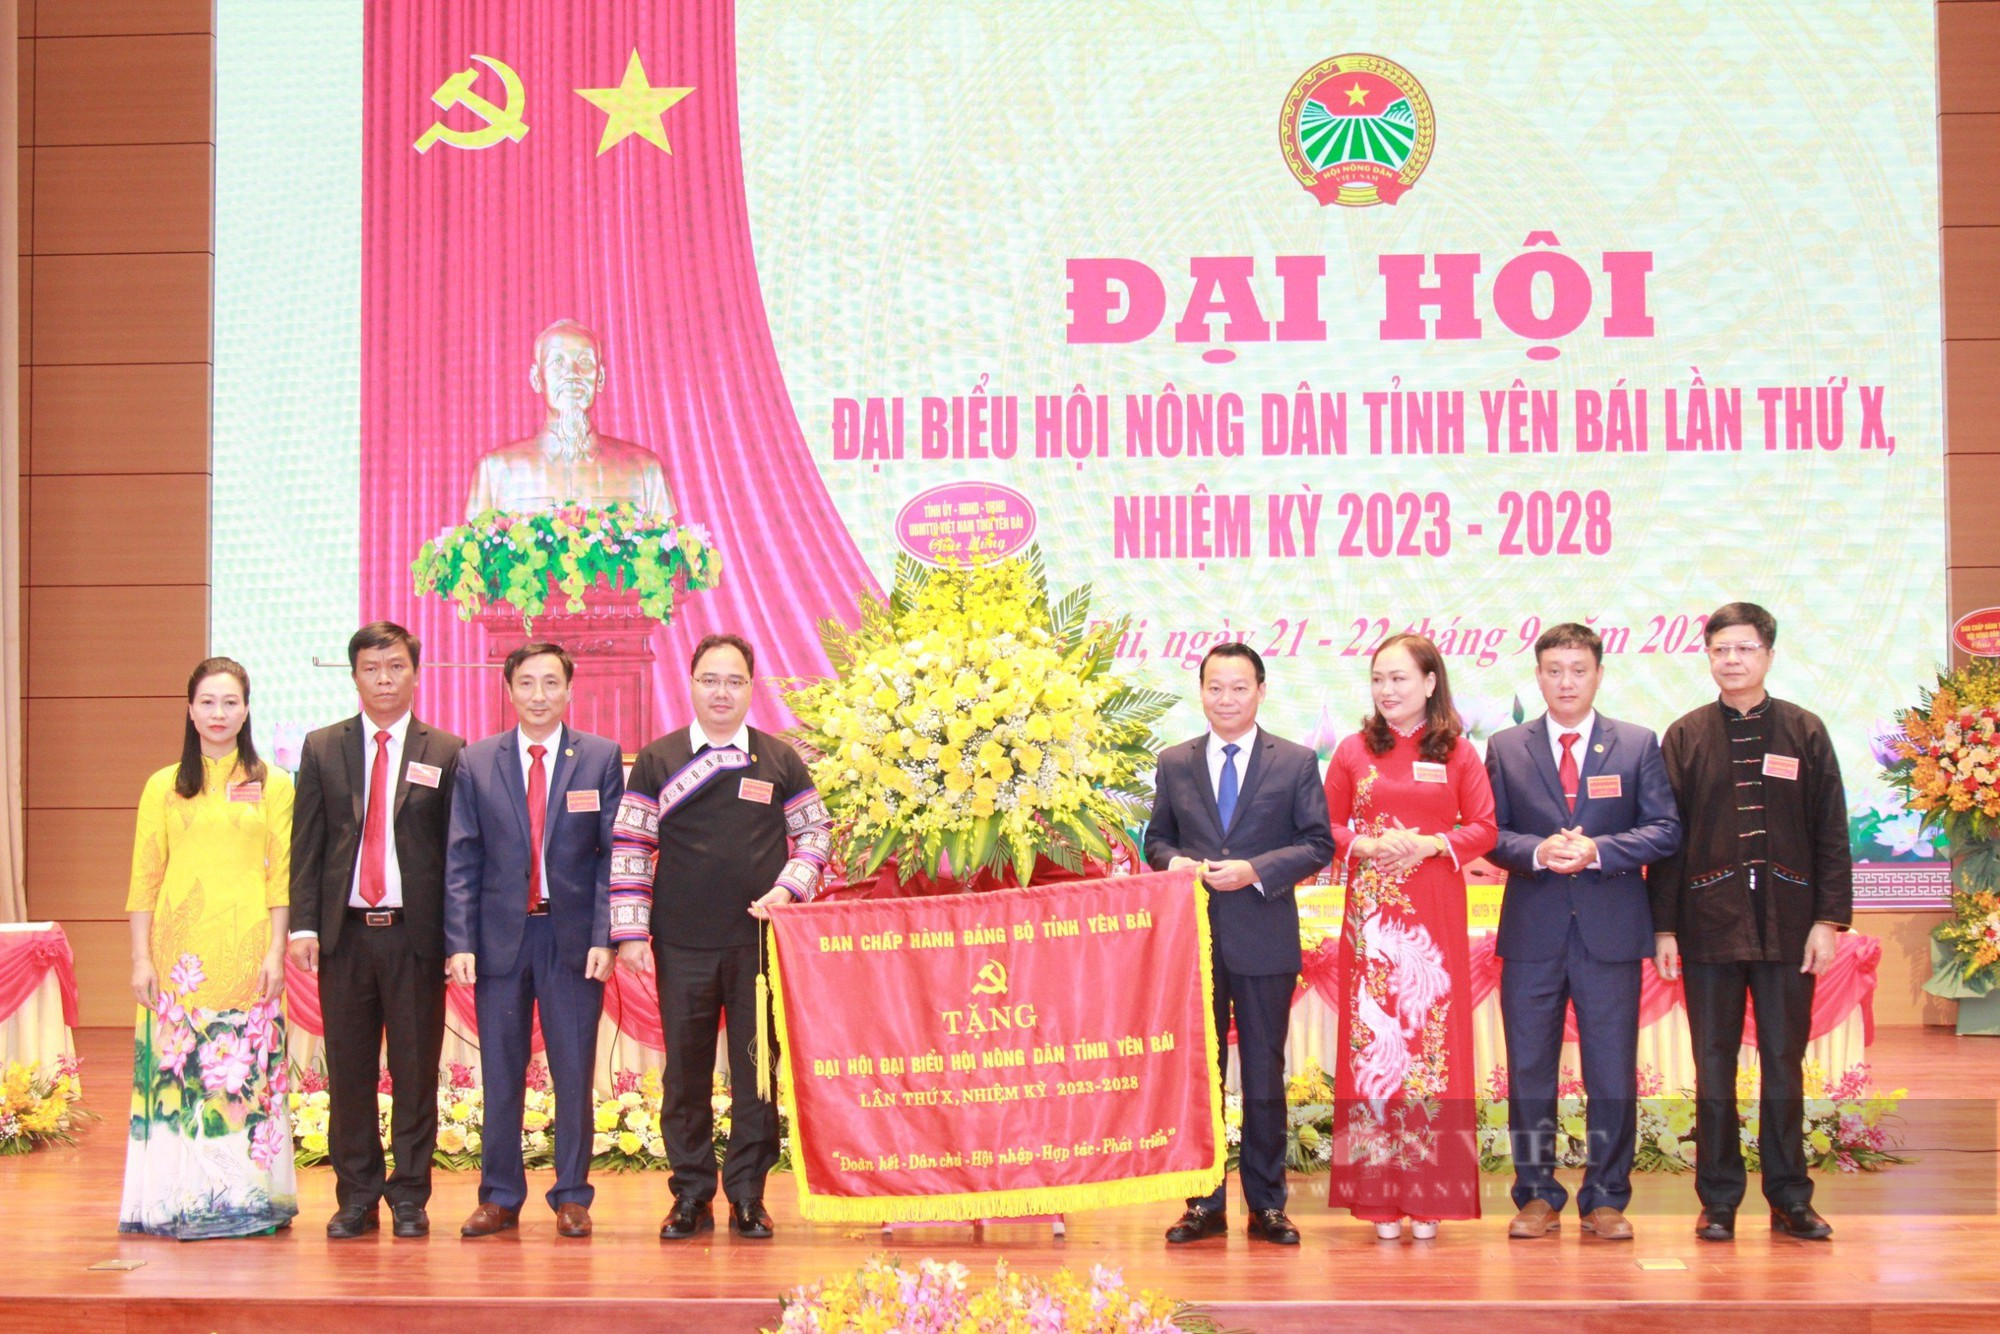 Phó Chủ tịch Hội NDVN Bùi Thị Thơm: Hội Nông dân tỉnh Yên Bái vận động hội viên phát huy bản sắc dân tộc - Ảnh 5.